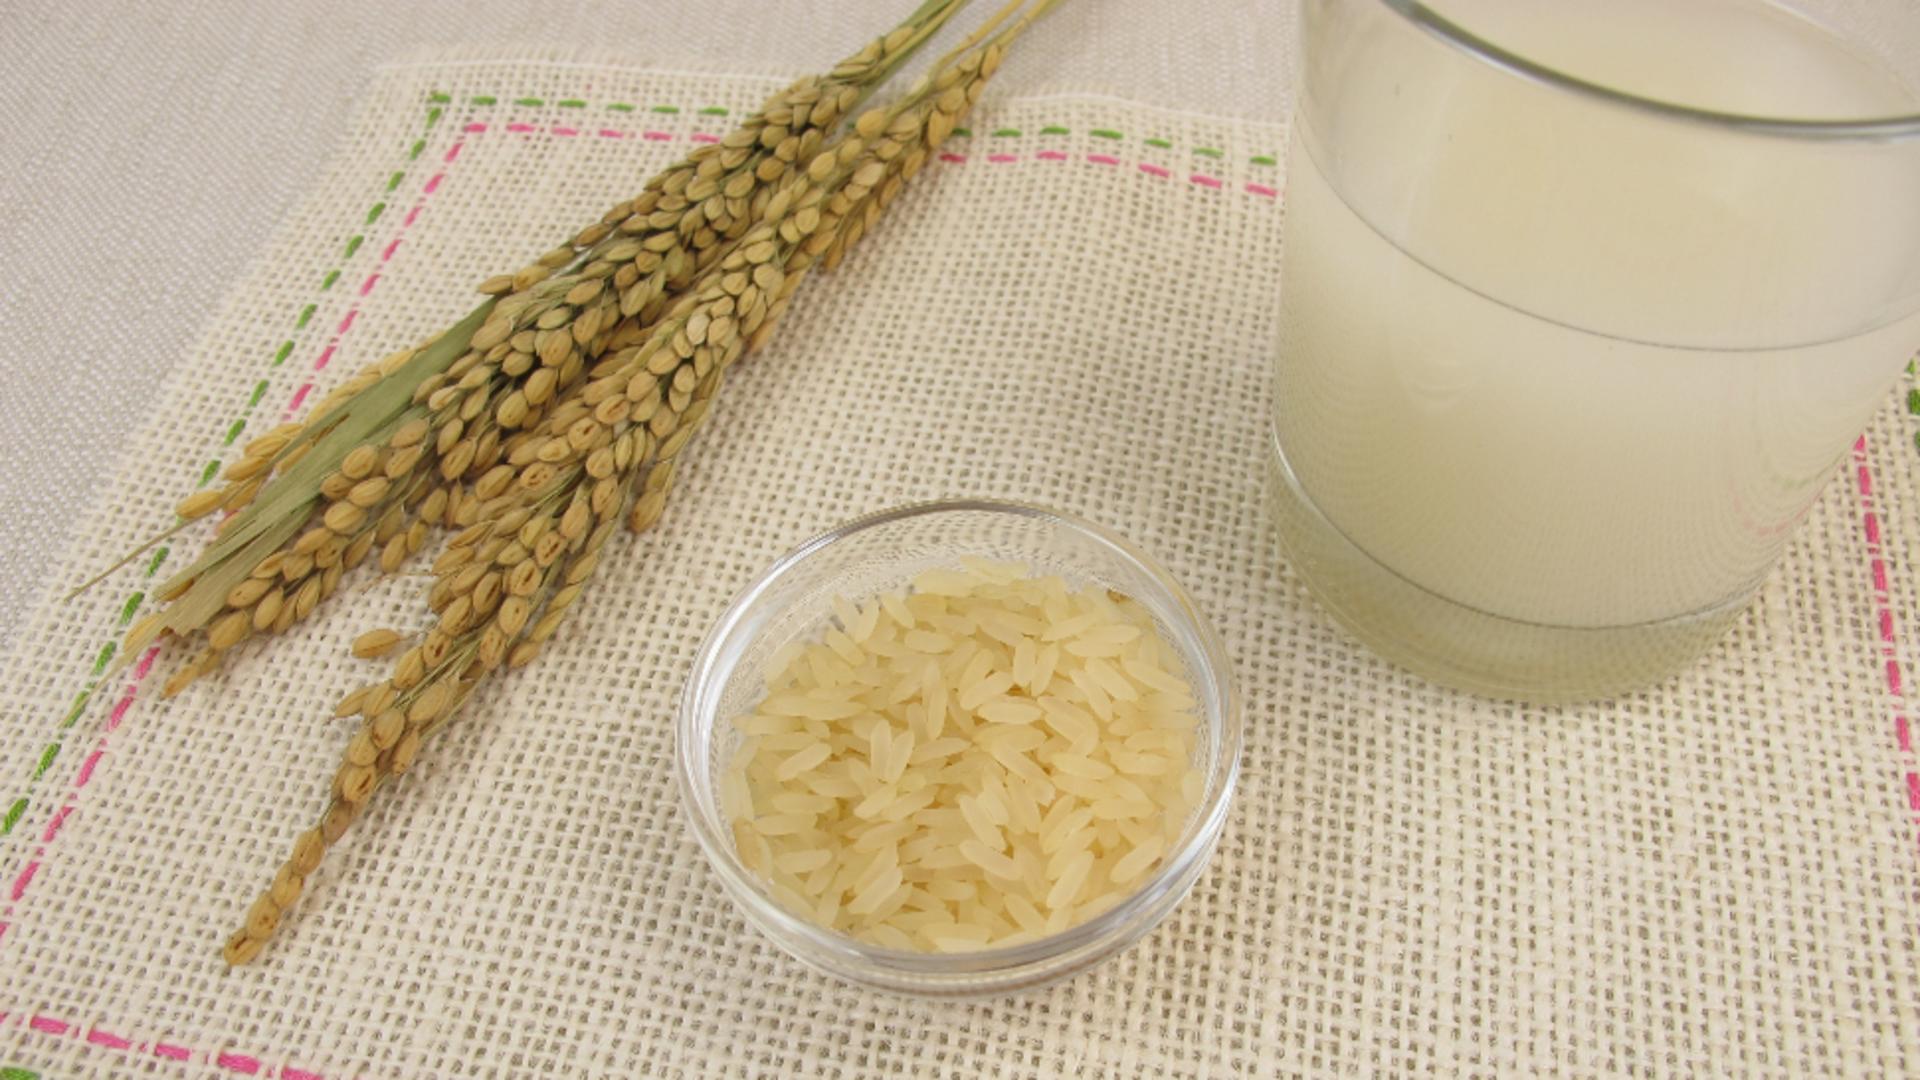 Apa de orez, benefică pentru organism. Foto/Profimedia